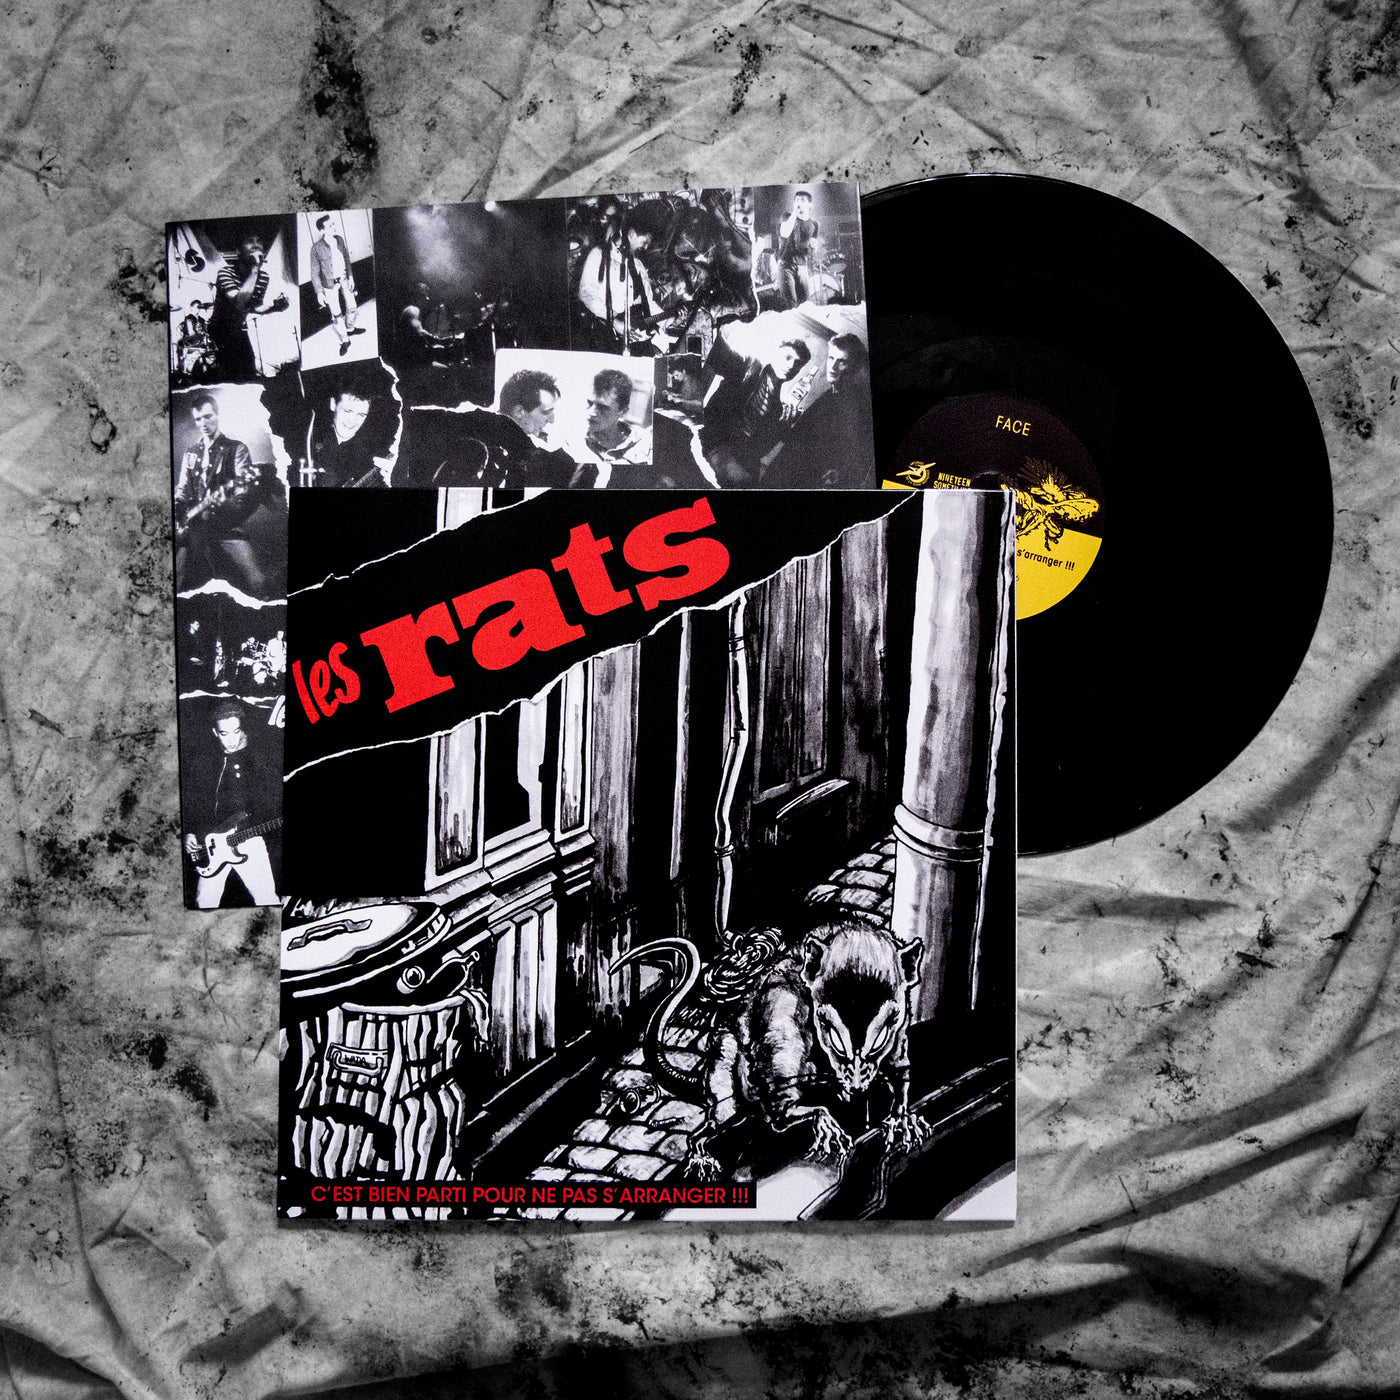 vinyle LES RATS "c'est bien parti pour ne pas s'arranger", disque noir et sous pochette imprimée avec textes et photos